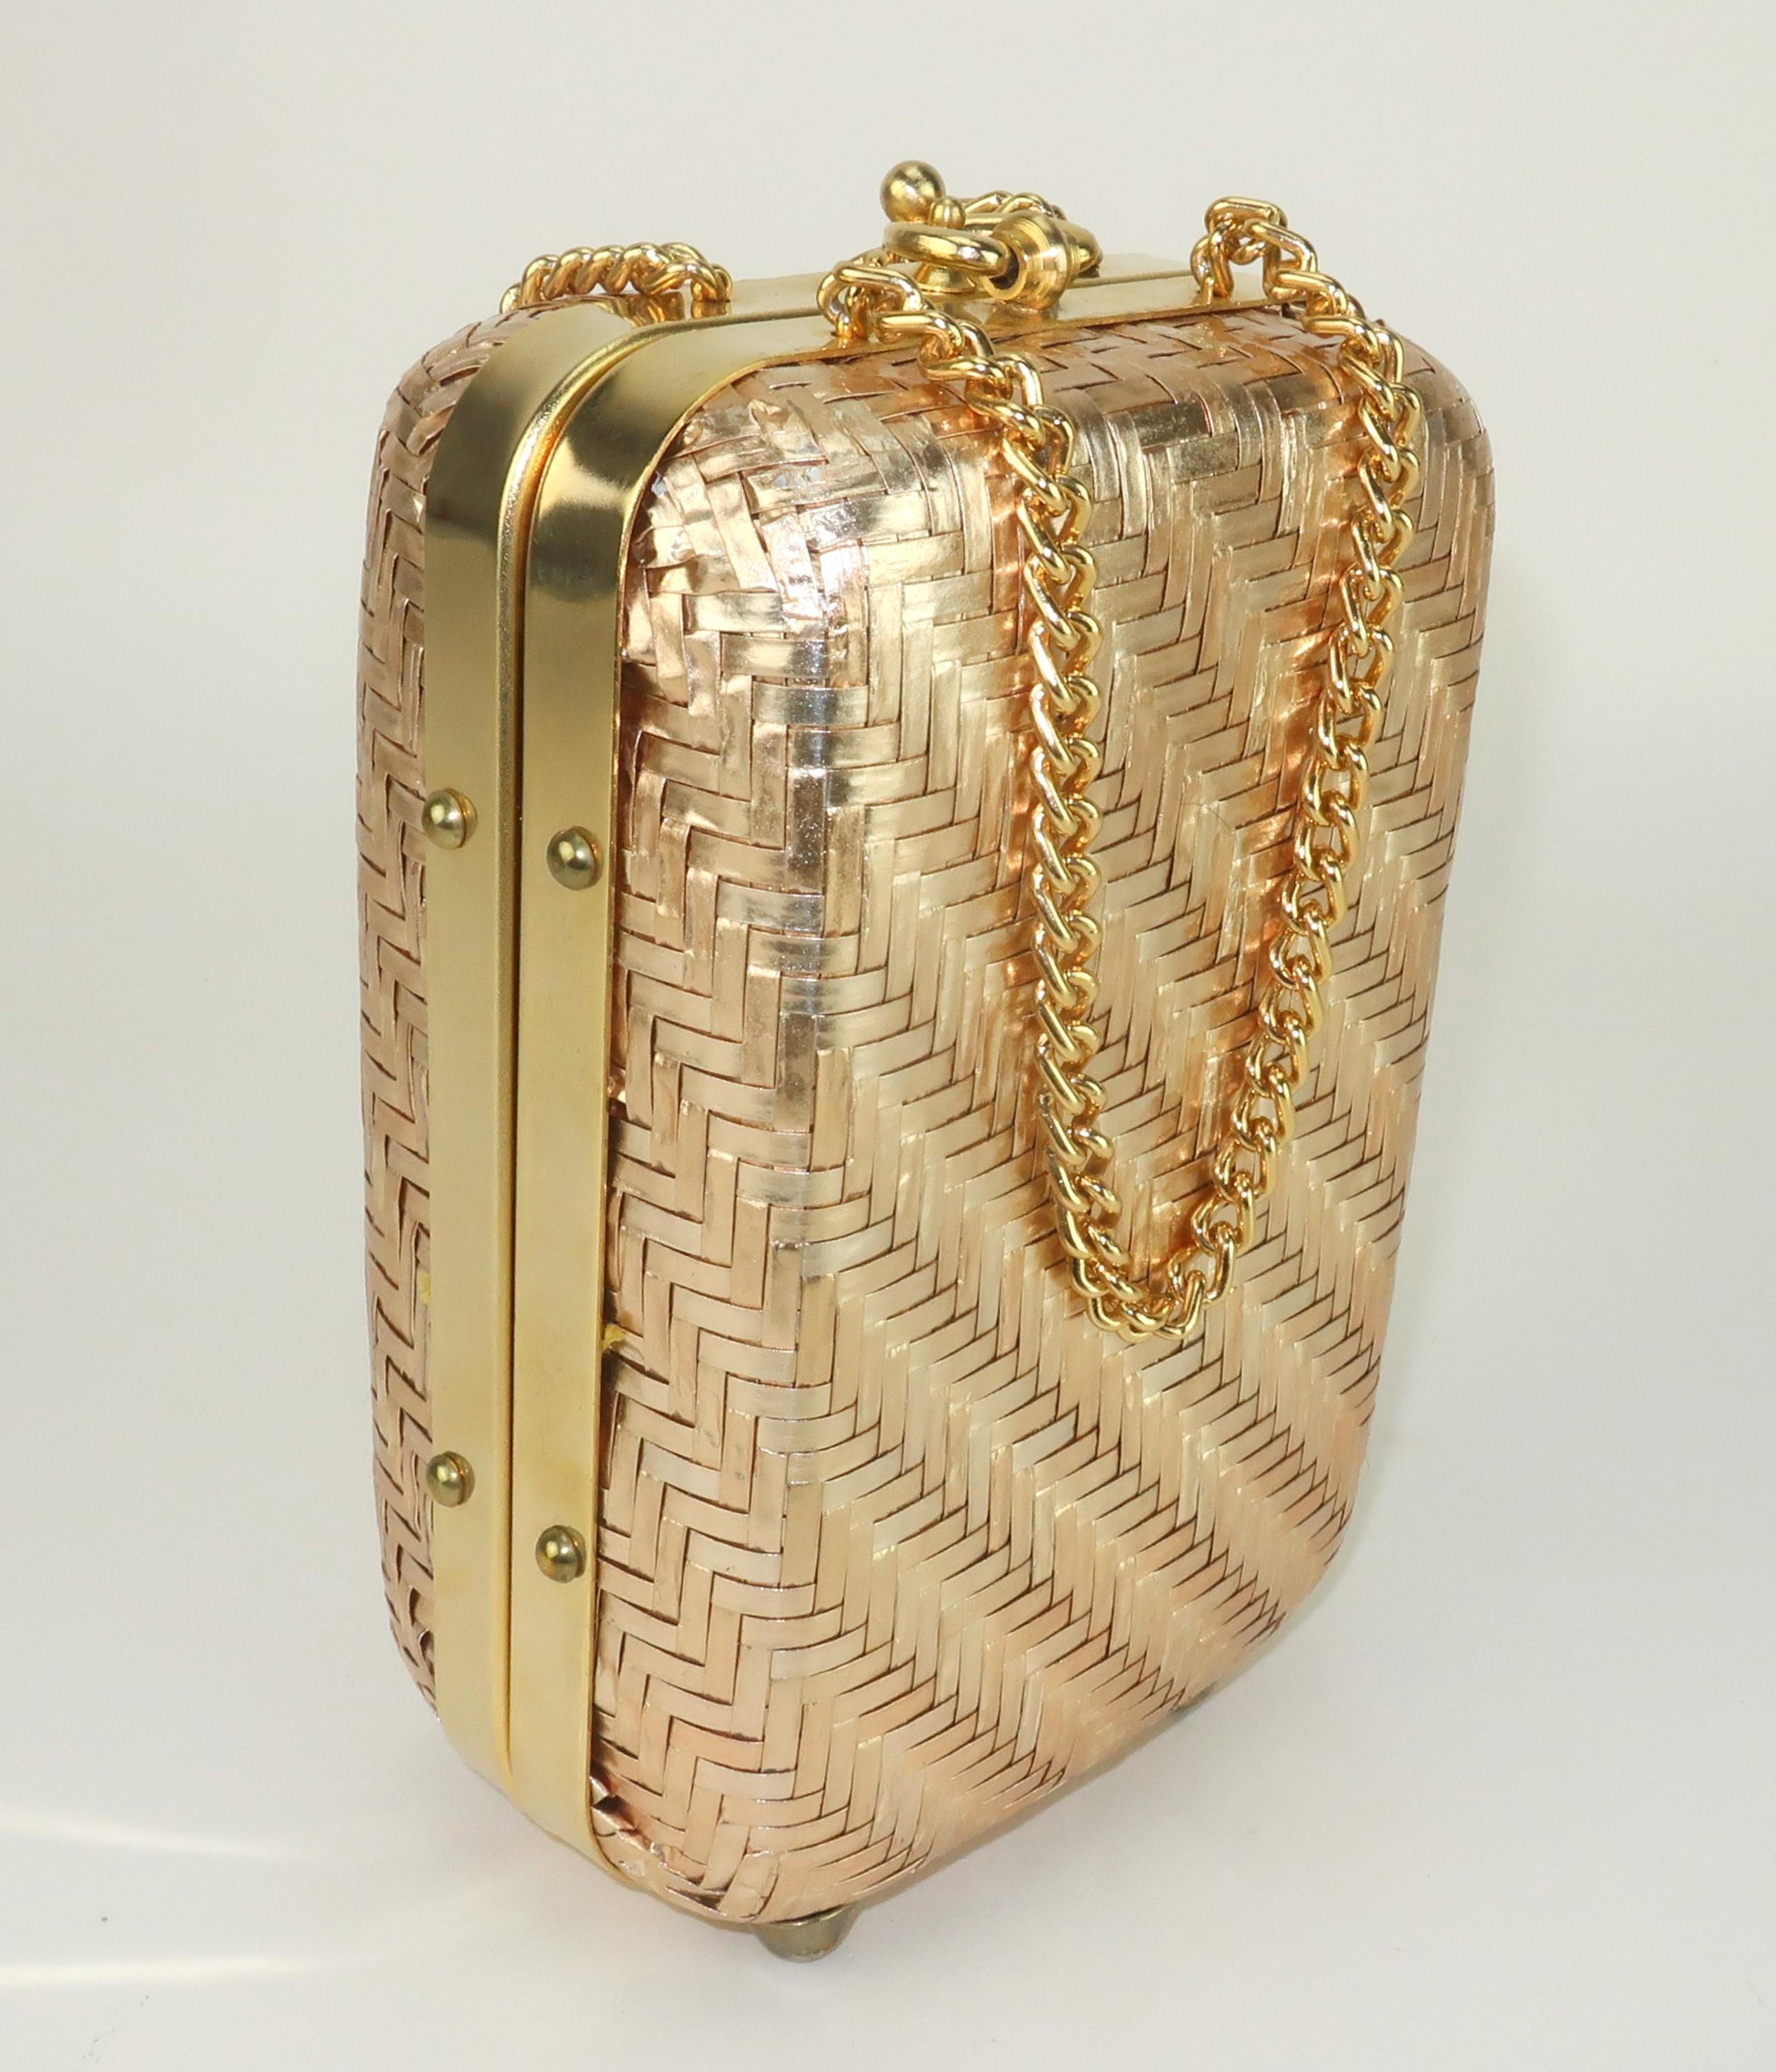 Italienische Handtasche in Form einer goldenen Strohschatulle mit doppelten Kettengriffen aus den 1960er Jahren.  Das Gold hat einen matten Farbton mit einem Hauch von Champagner im Finish.  Der goldfarbene Metallrahmen ist mit Nieten verziert und